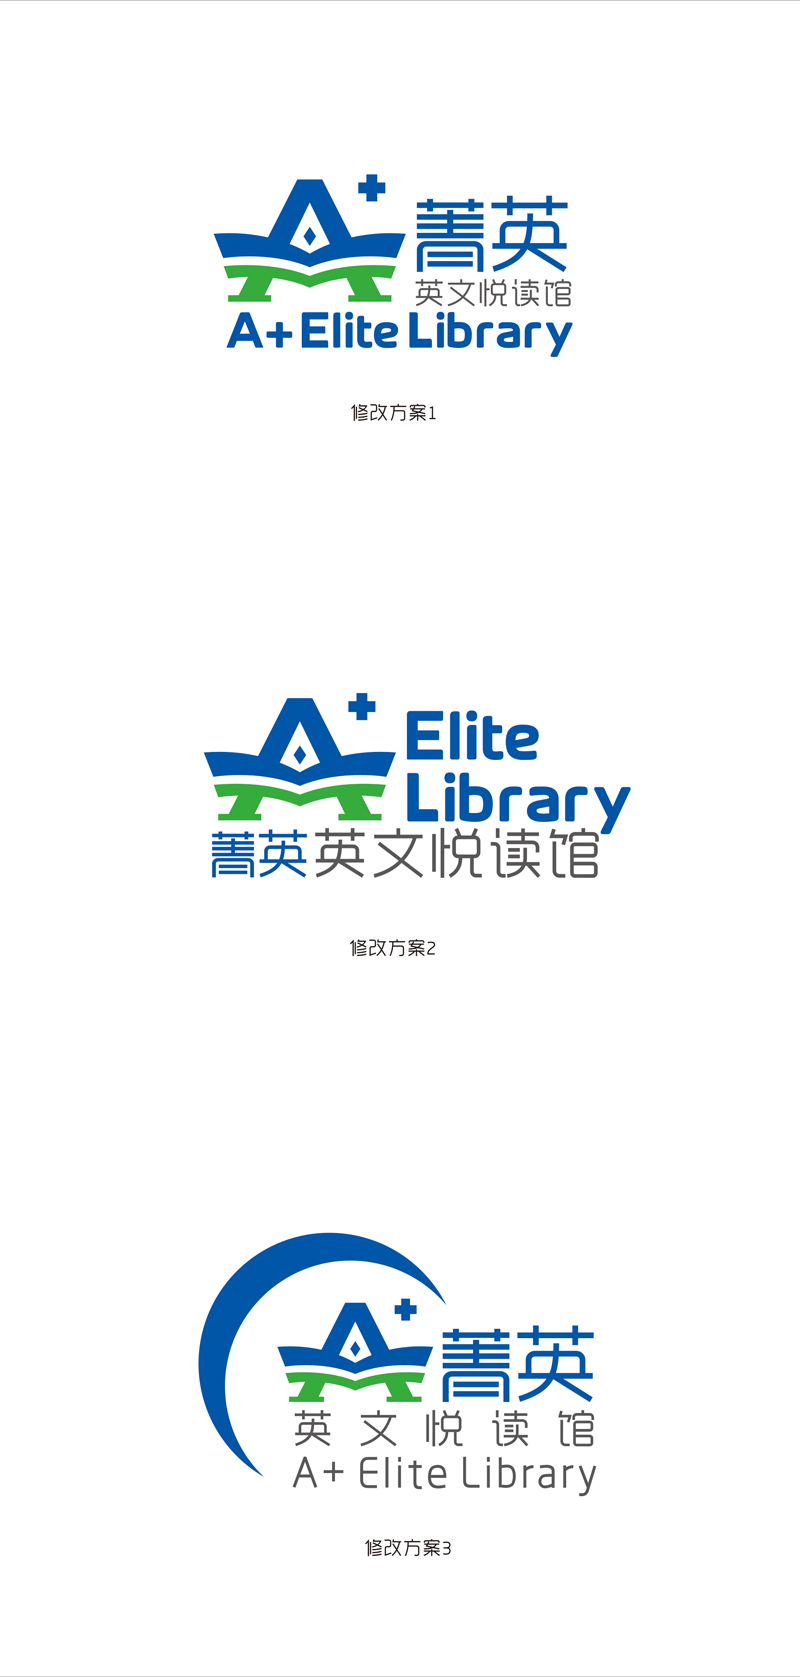 赵鹏的A菁英文图书馆logo设计